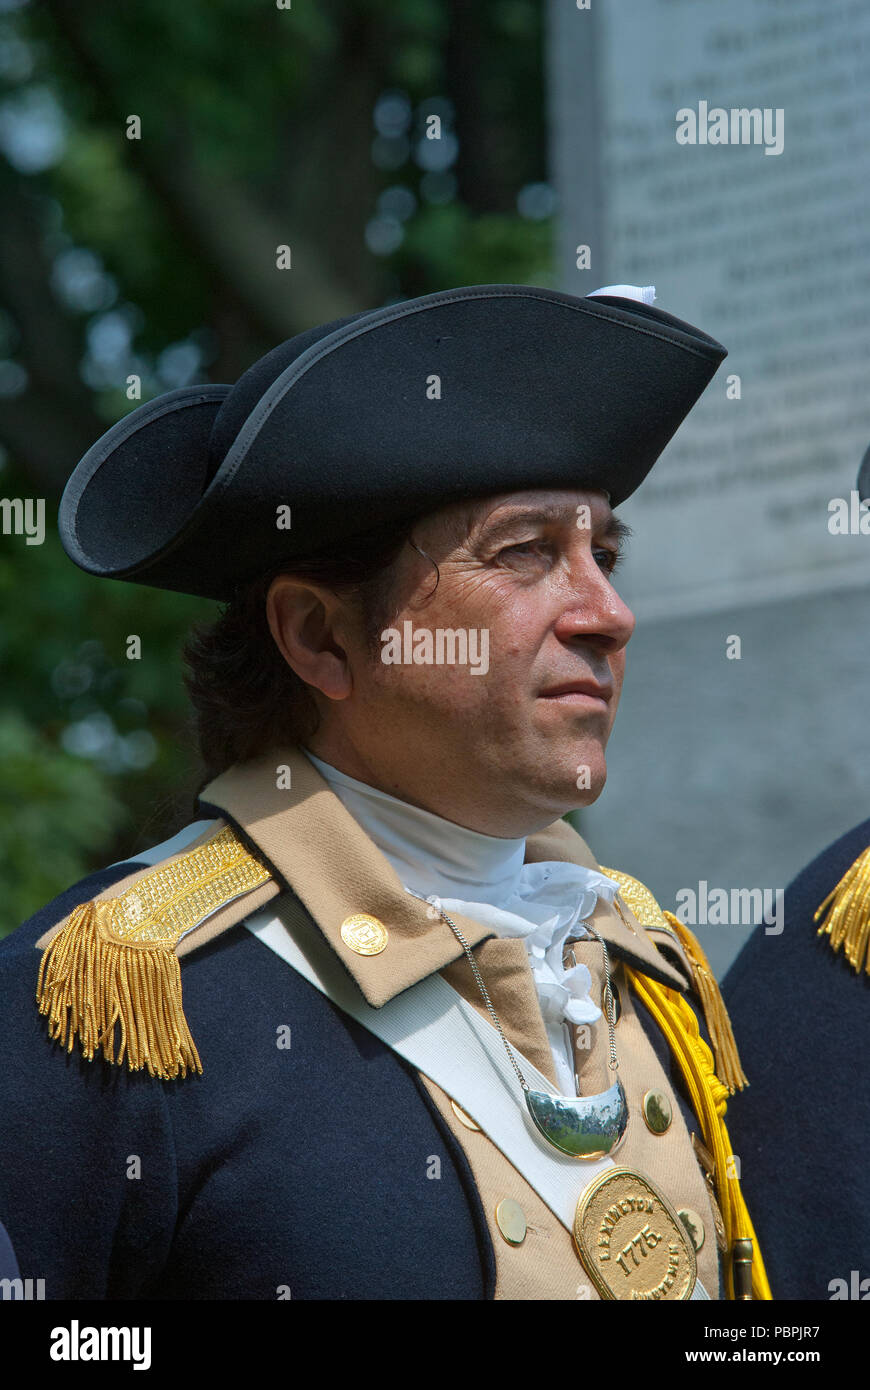 L'homme en uniforme militaire pour rejouer la guerre d'Indépendance américaine, Lexington Battle Green, Lexington, comté de Middlesex, Massachusetts, USA Banque D'Images